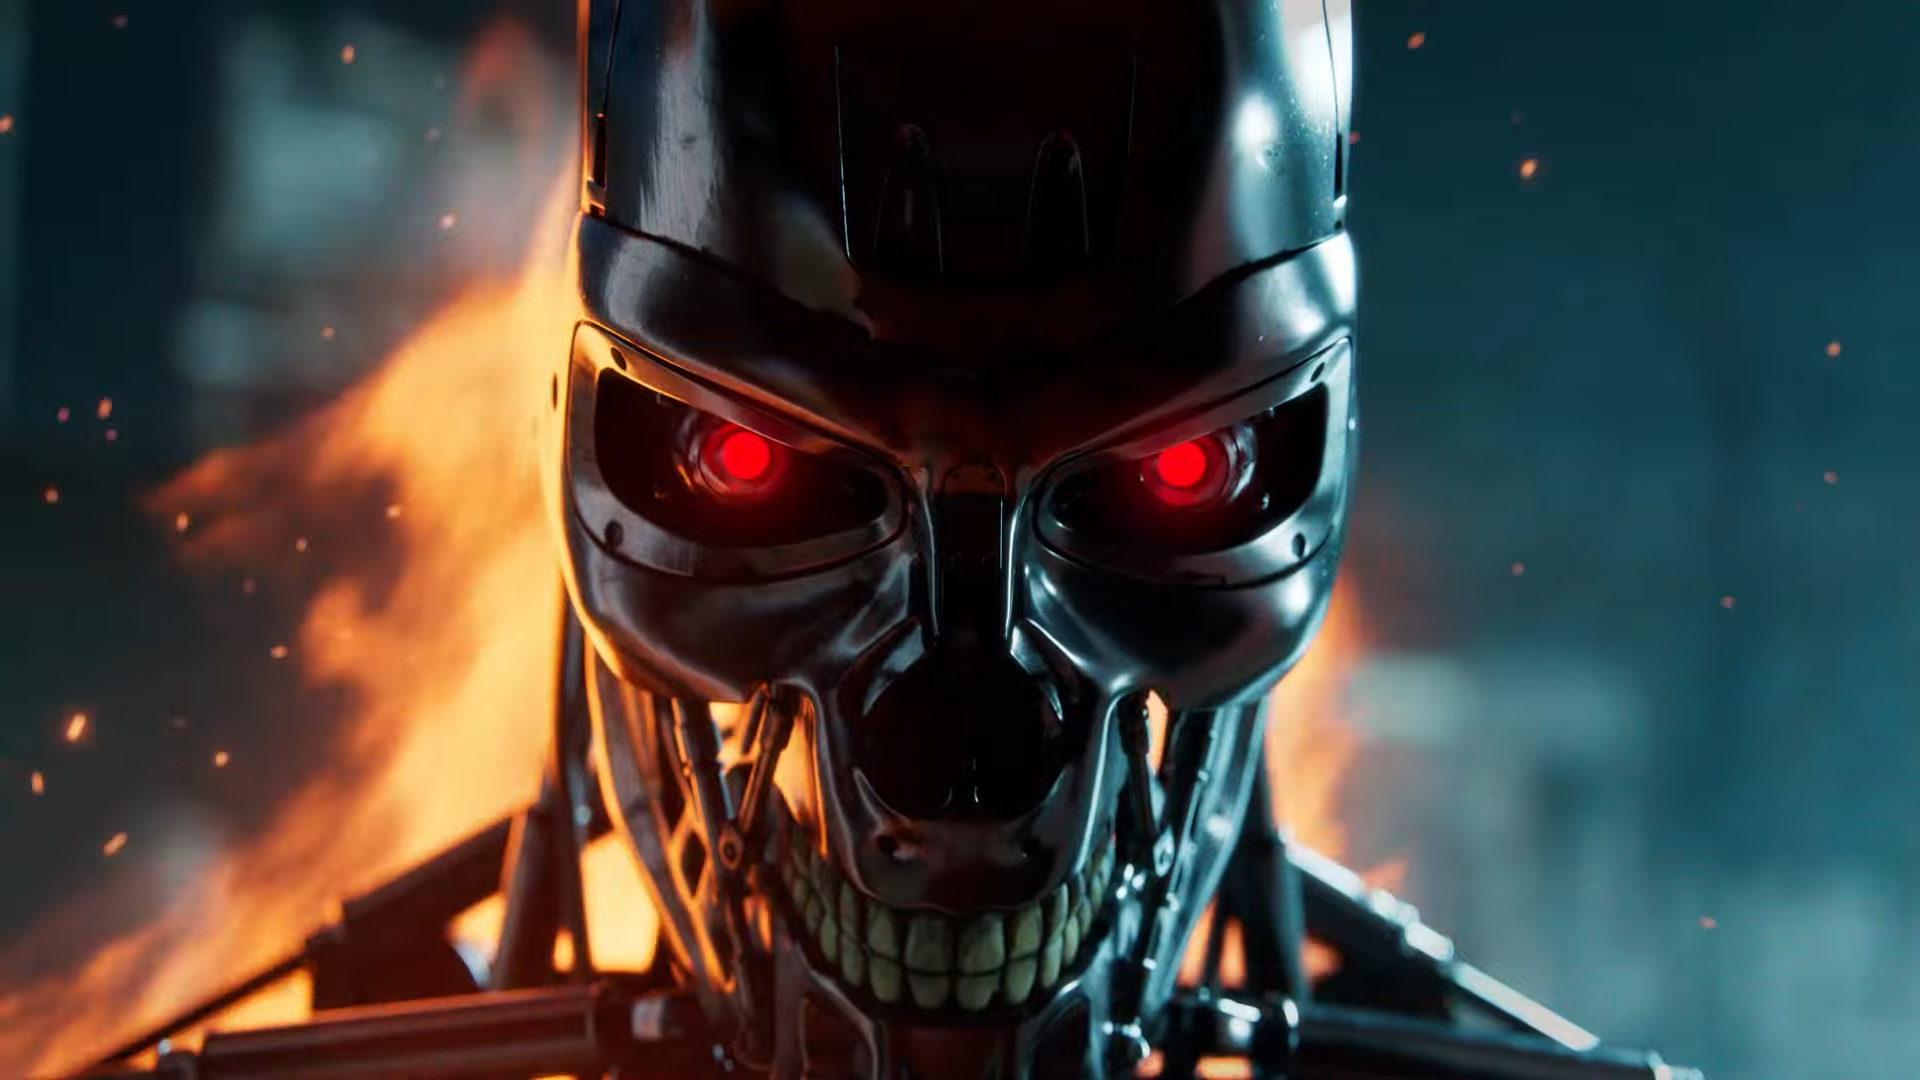 Ein Terminator-Roboter mit Flammen dahinter